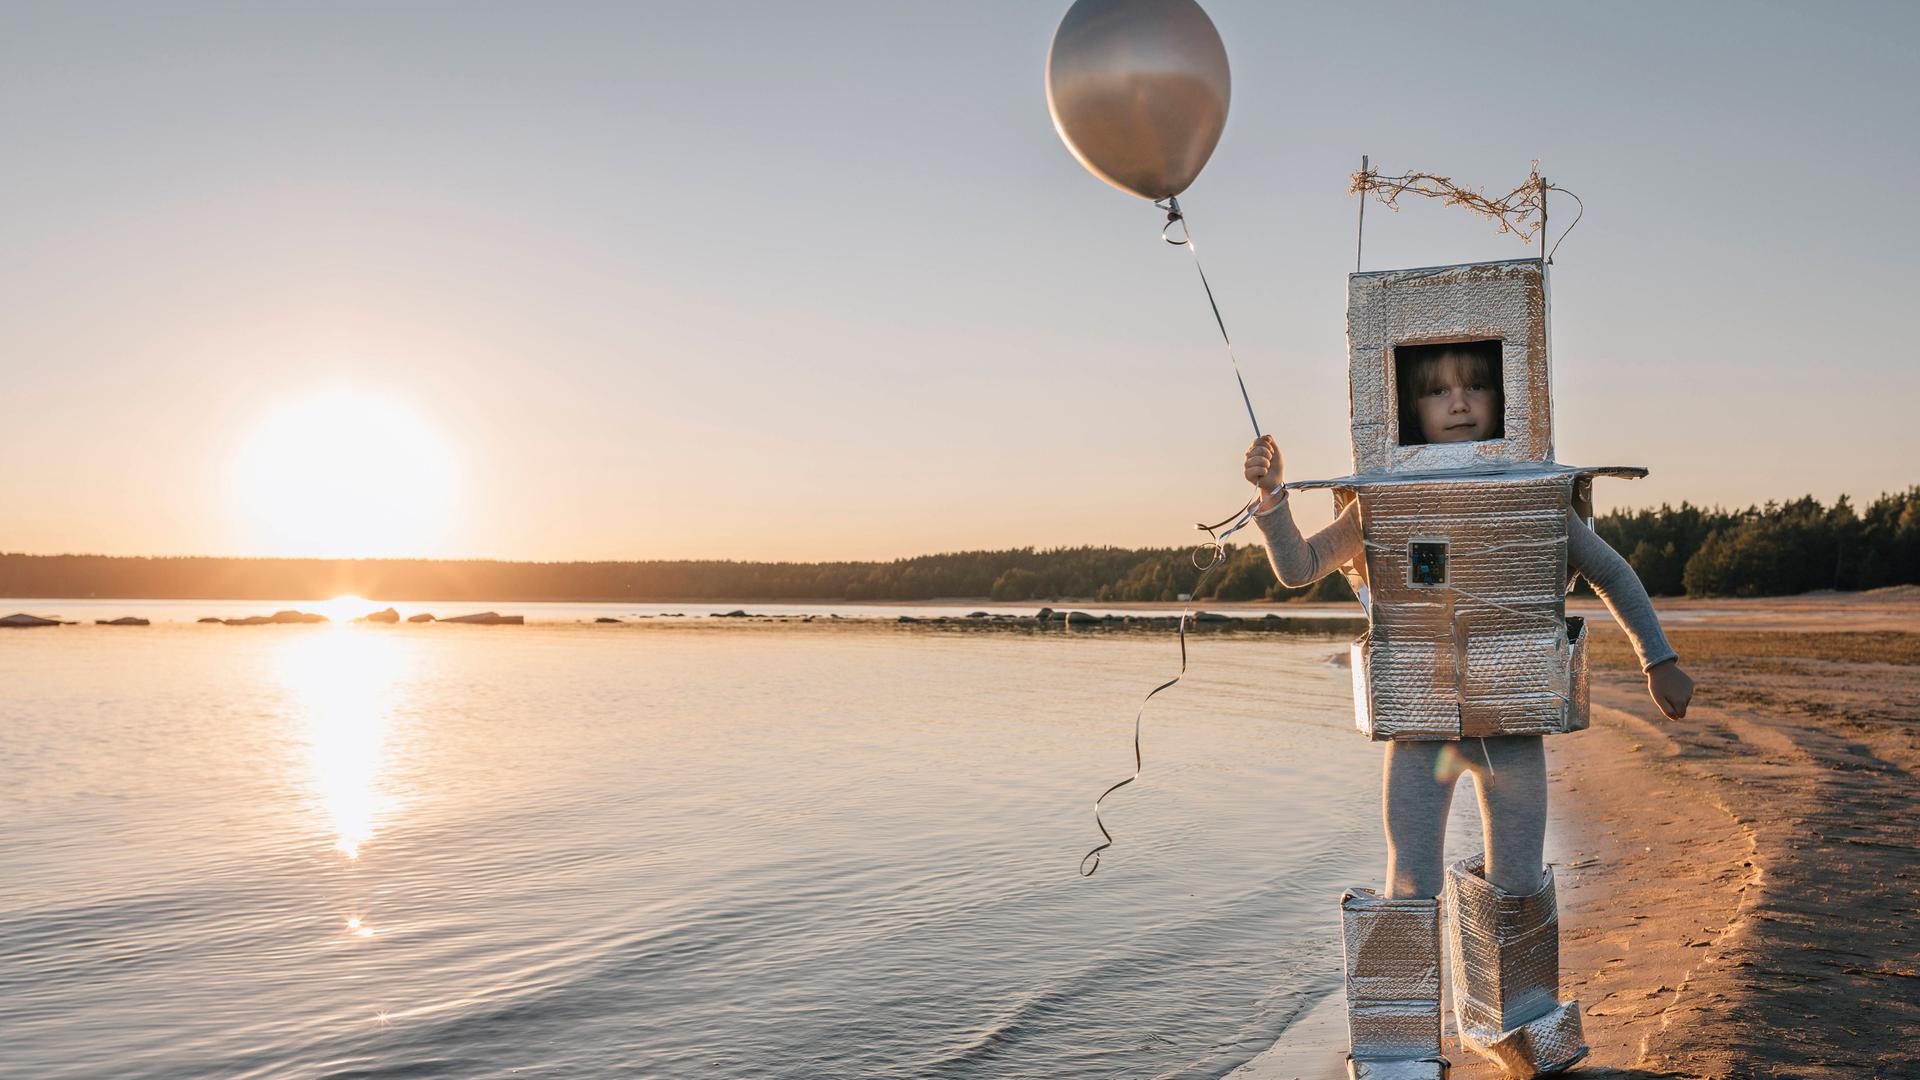 Ein Kind in einem gebastelten Kosmonautenanzug hält einen Ballon in der Hand und läuft am Ufer eines Sees entlang.